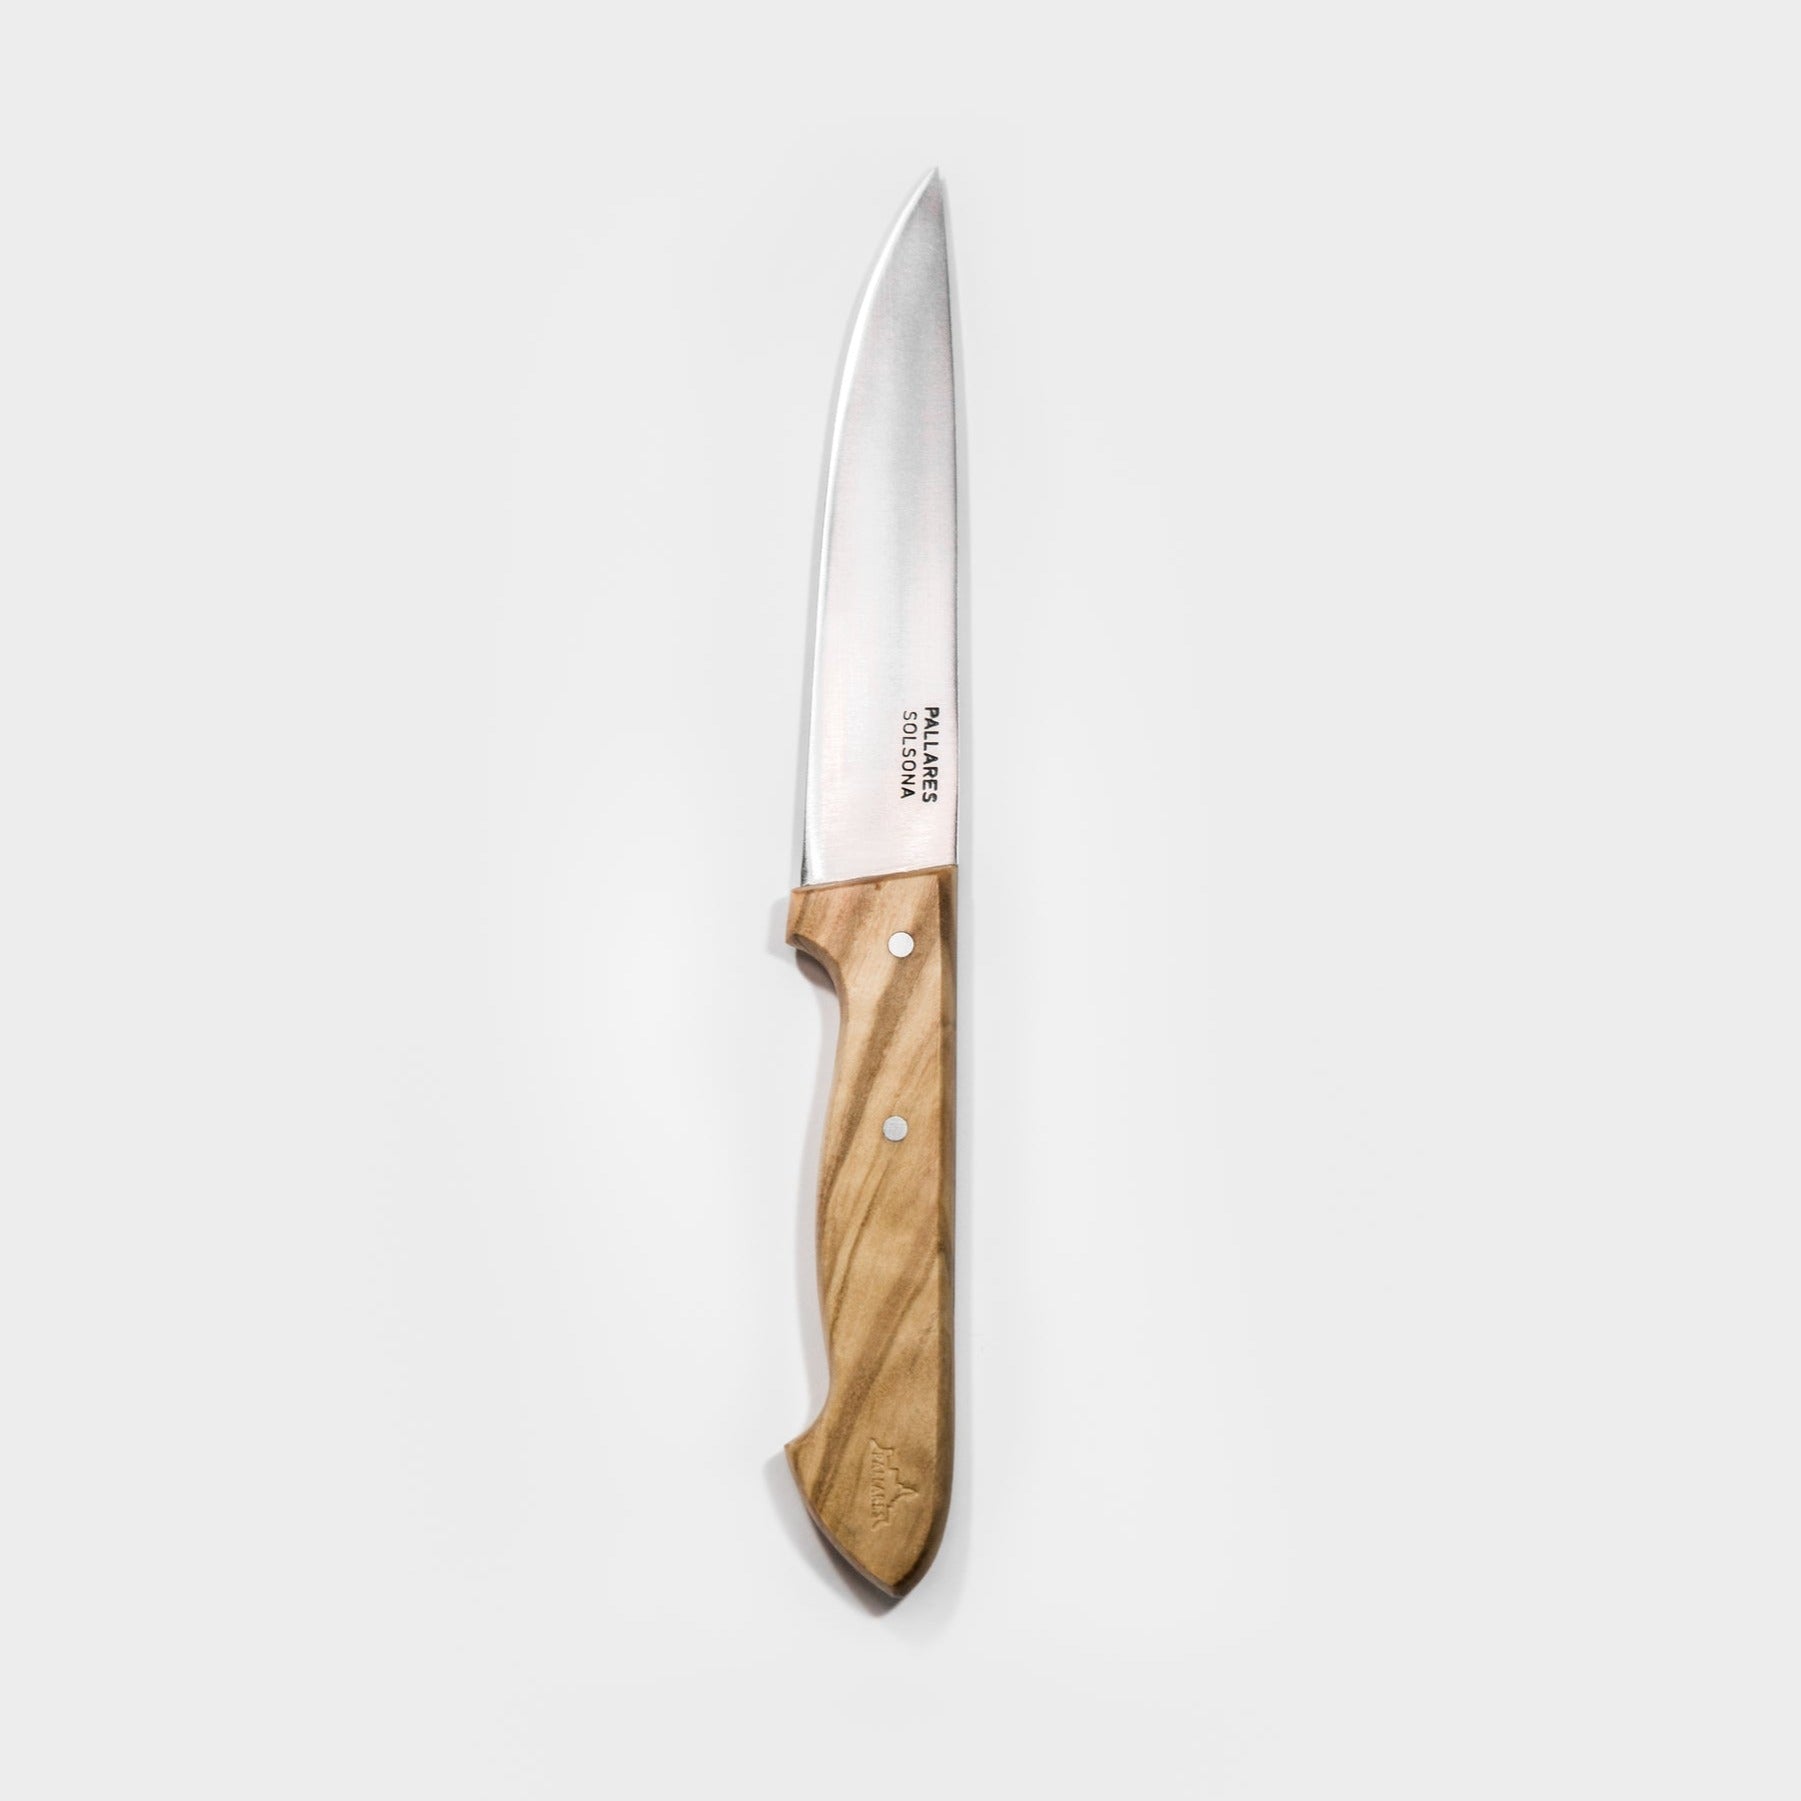 Le couteau de table inox et bois - Pallares Solsona - < shop